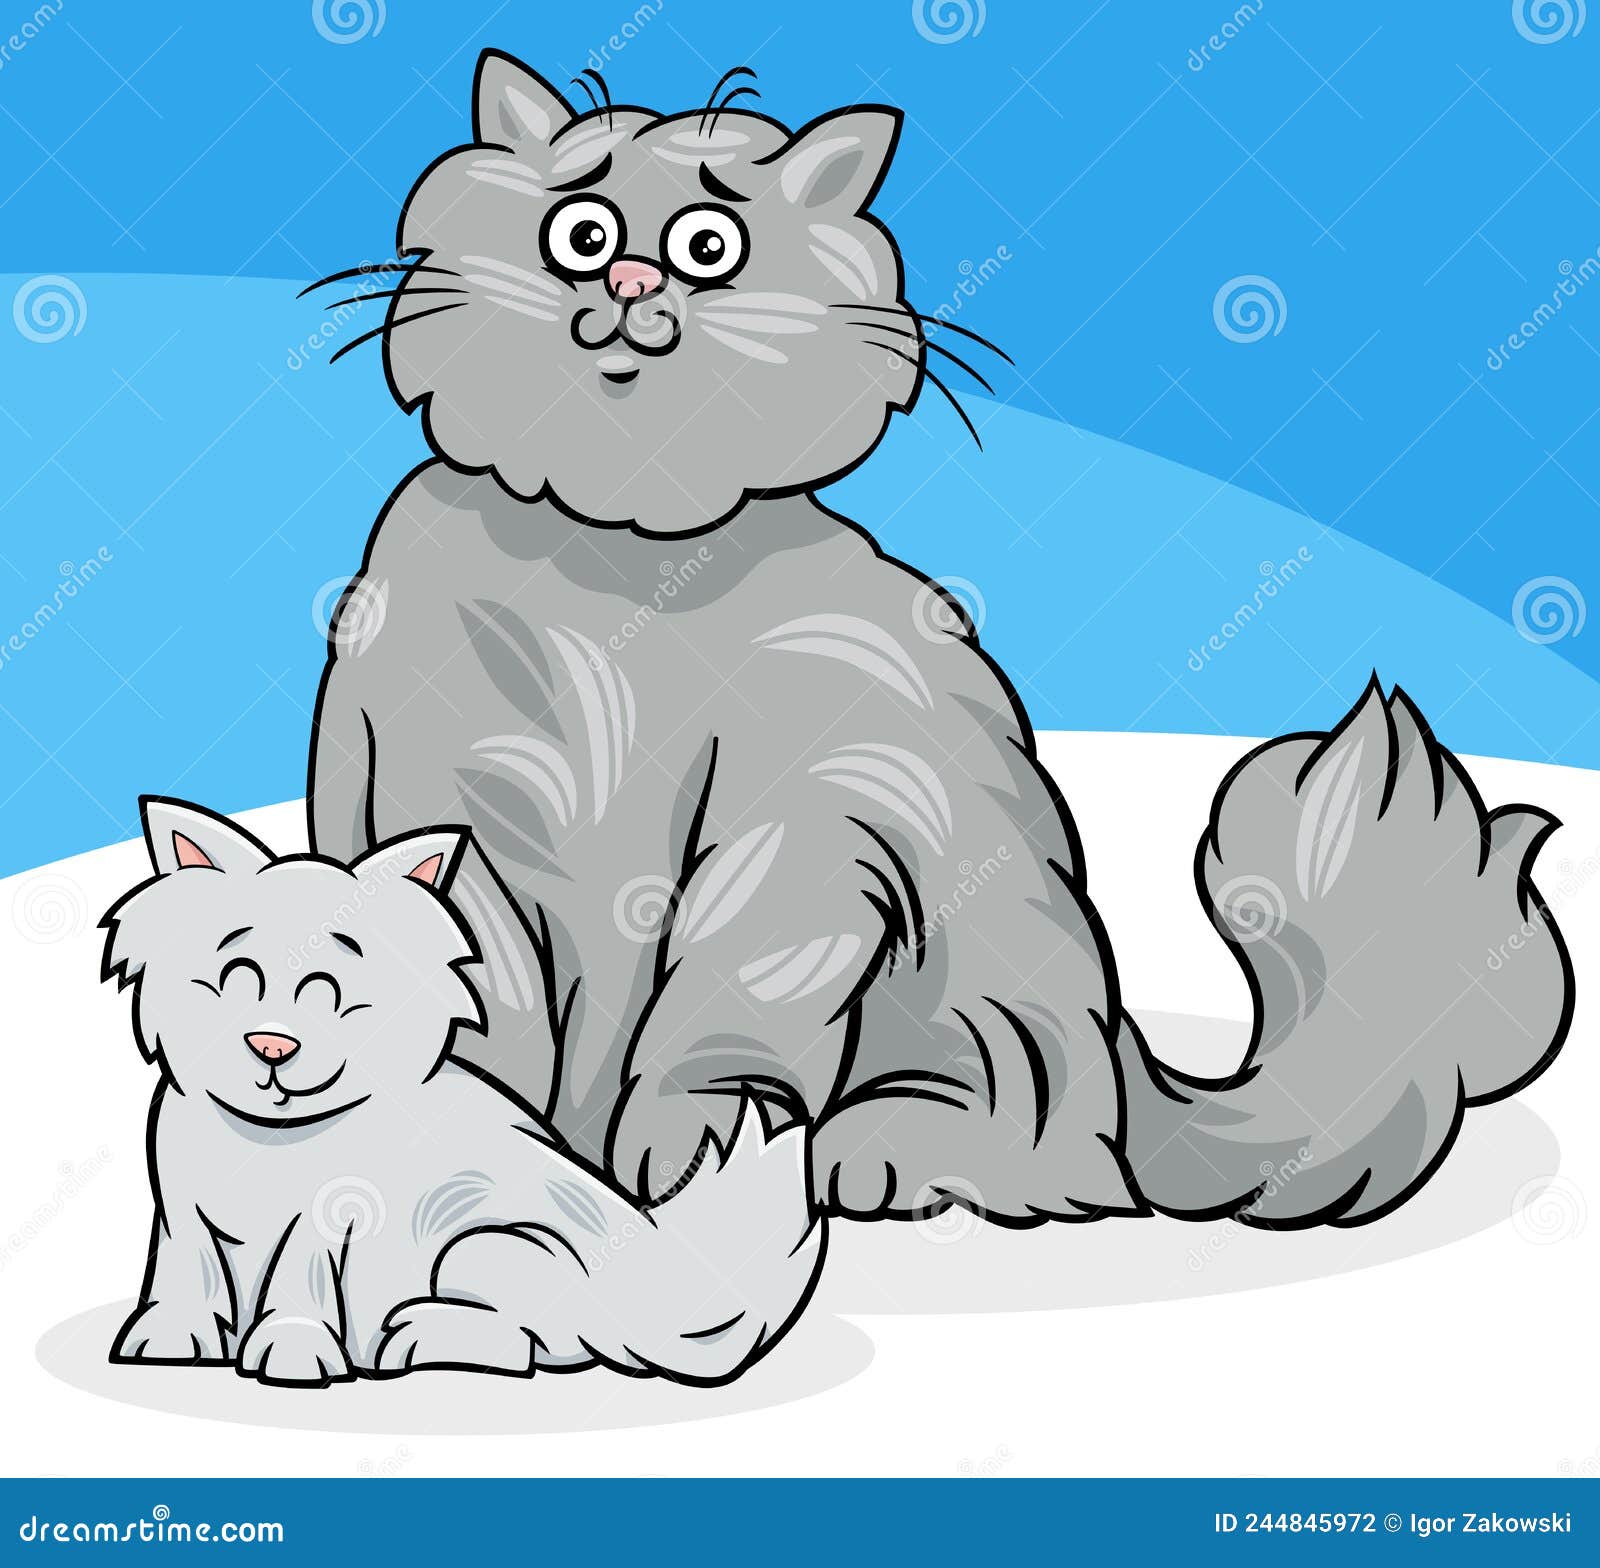 Desenho Animado De Gato. Vetor De Clipart De Gatos Ilustração do